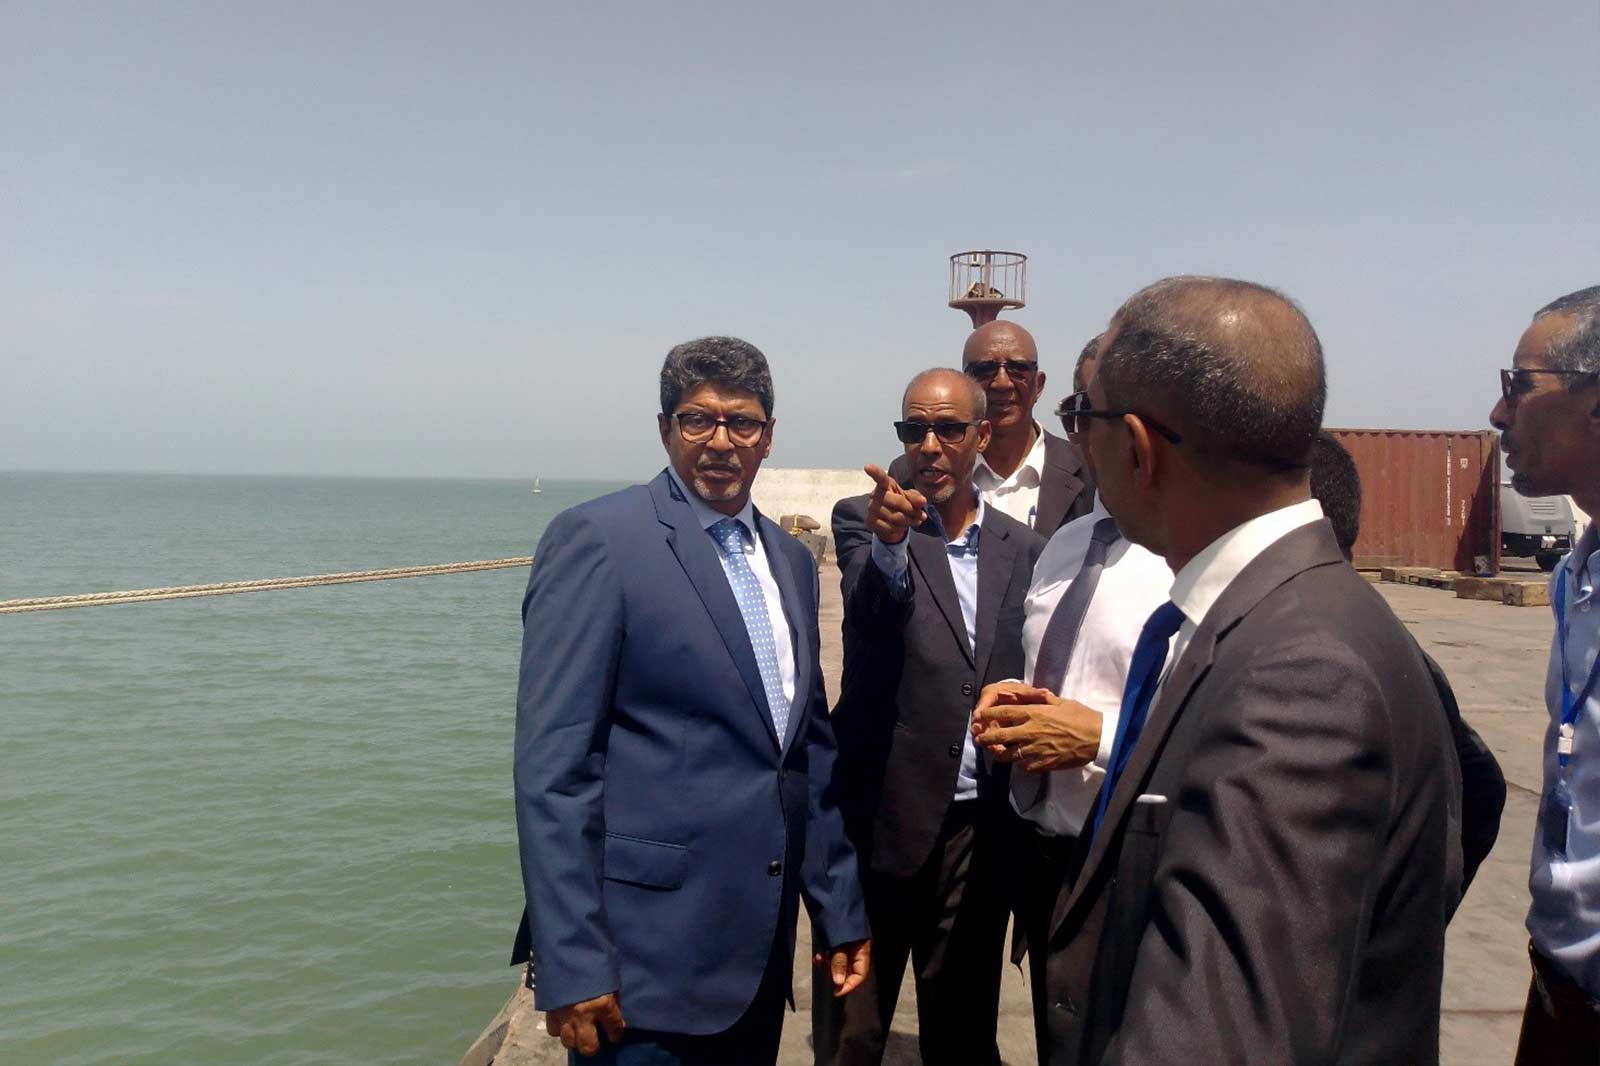 المدير العام سيدي محمد ولد محم يعقد اجتماعات مع كبار المسؤولين في الميناء ويتجول في أرصفته ومرافقه الحيوية